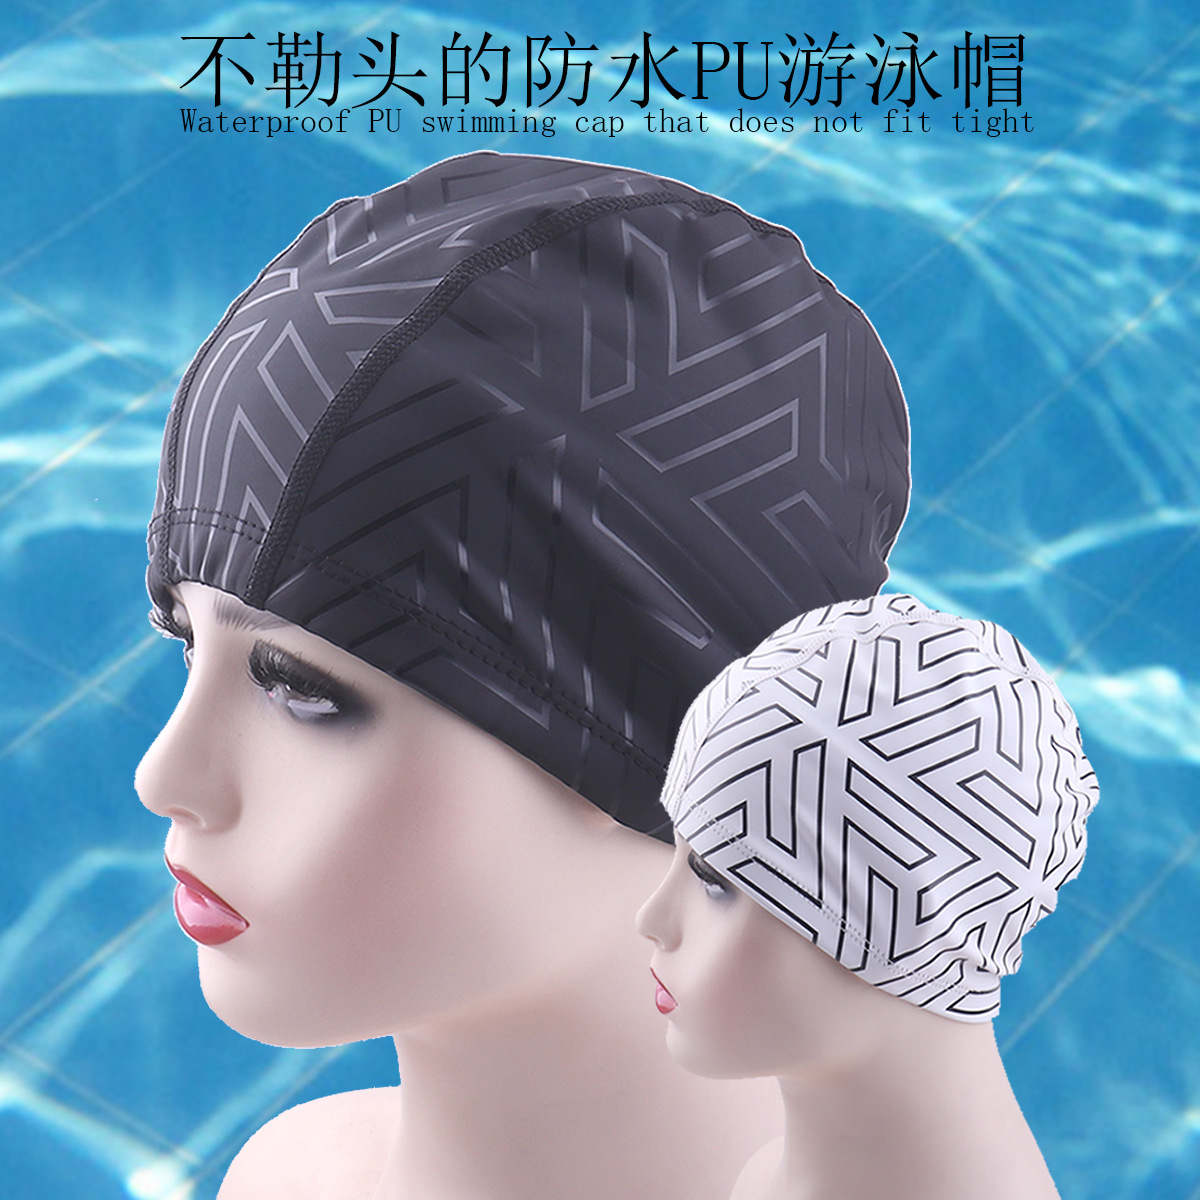 新款PU防水不勒头游泳帽护发帽舒适弹力面料男女护耳泳帽游泳装备